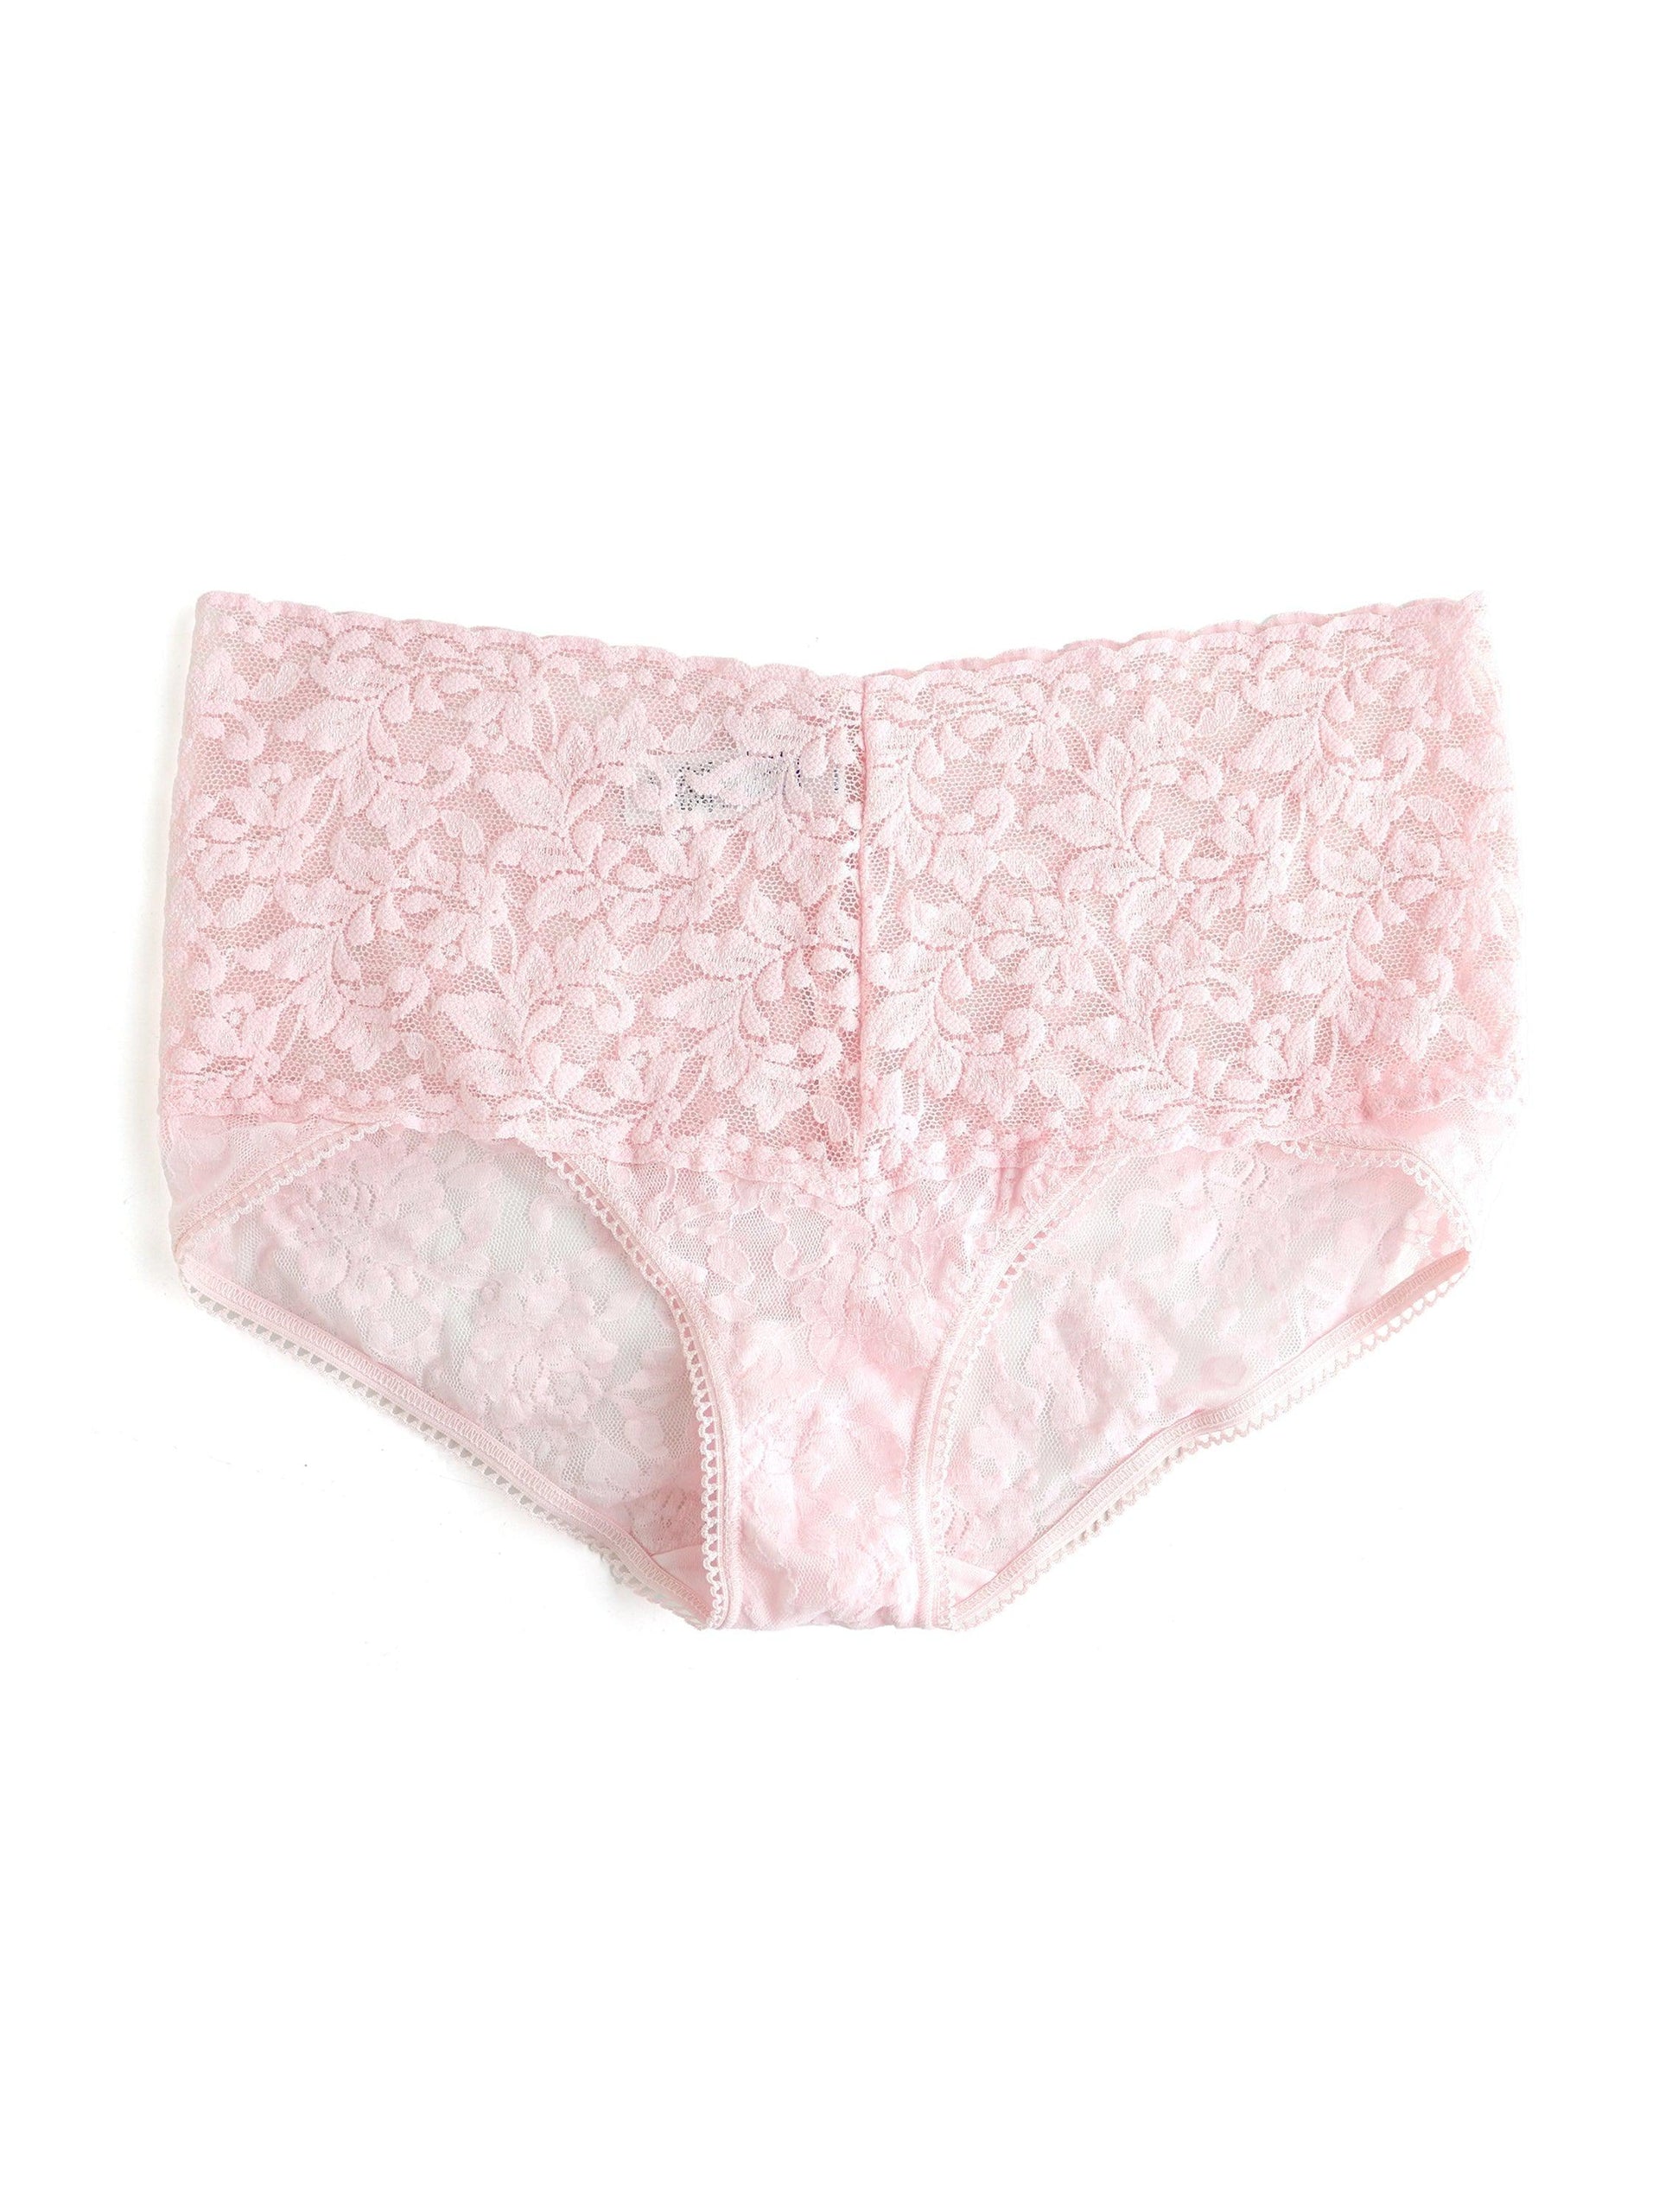 Retro Lace V-Kini Bliss Pink | Hanky Panky